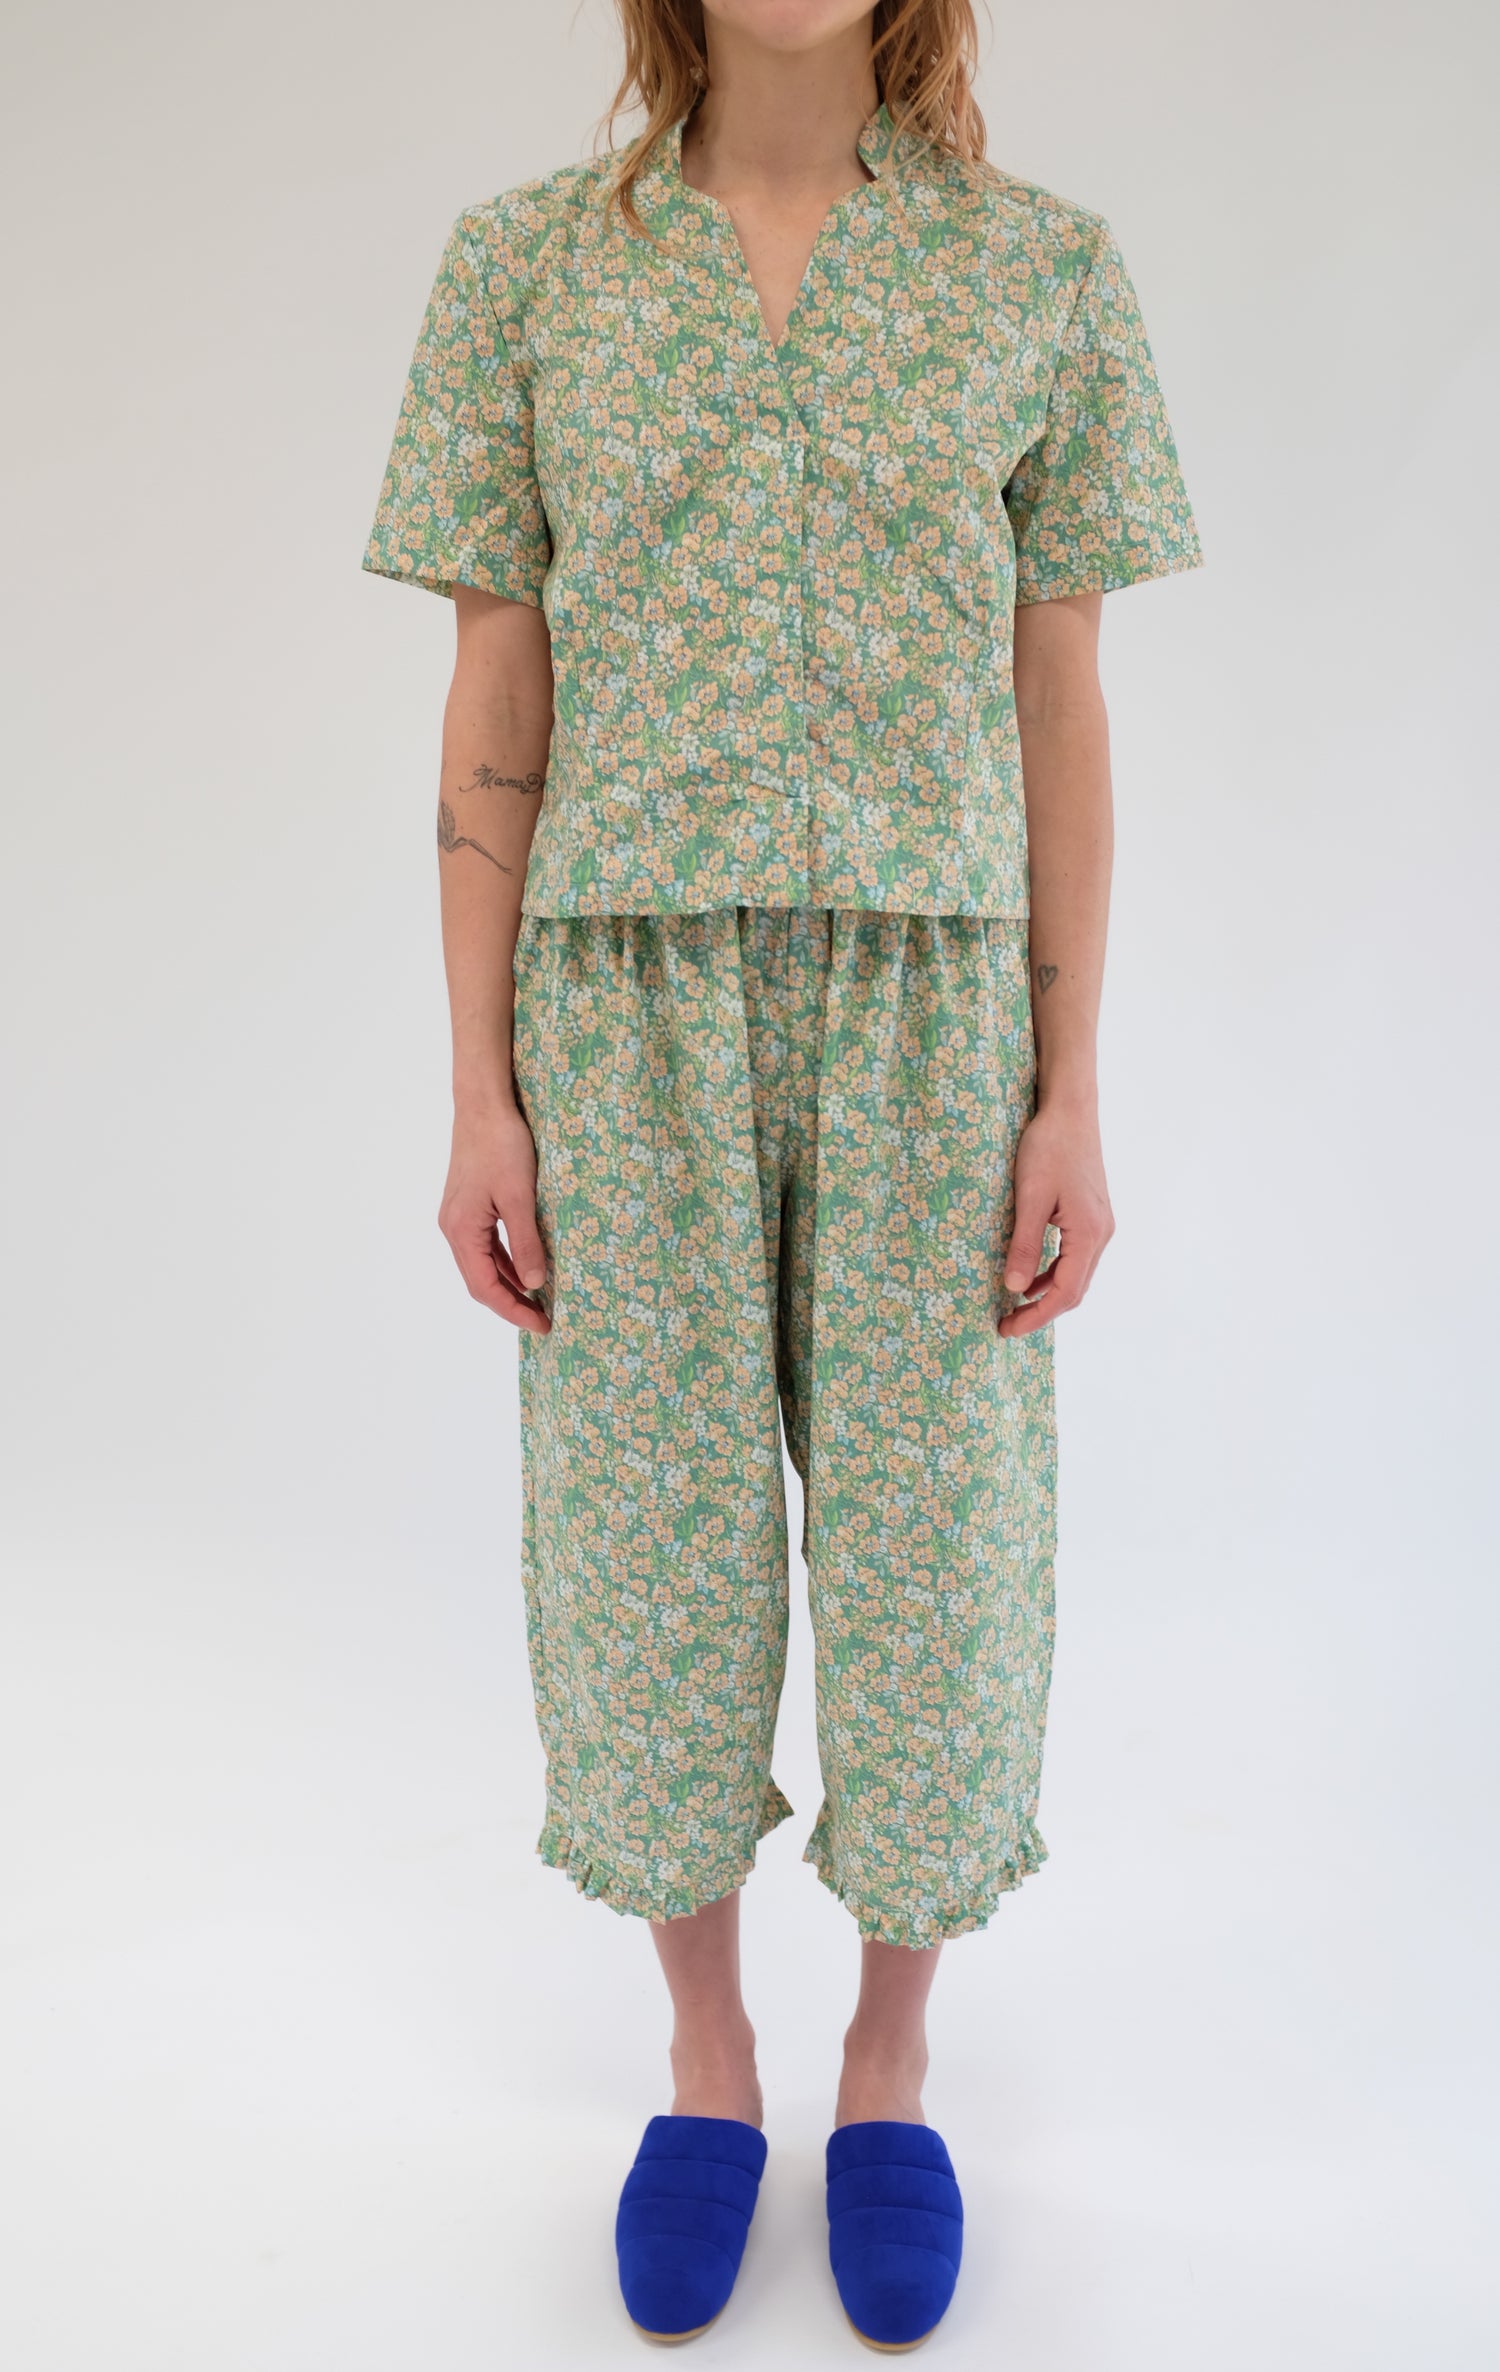 Beklina Okinawa Pajama Pant Herb Floral